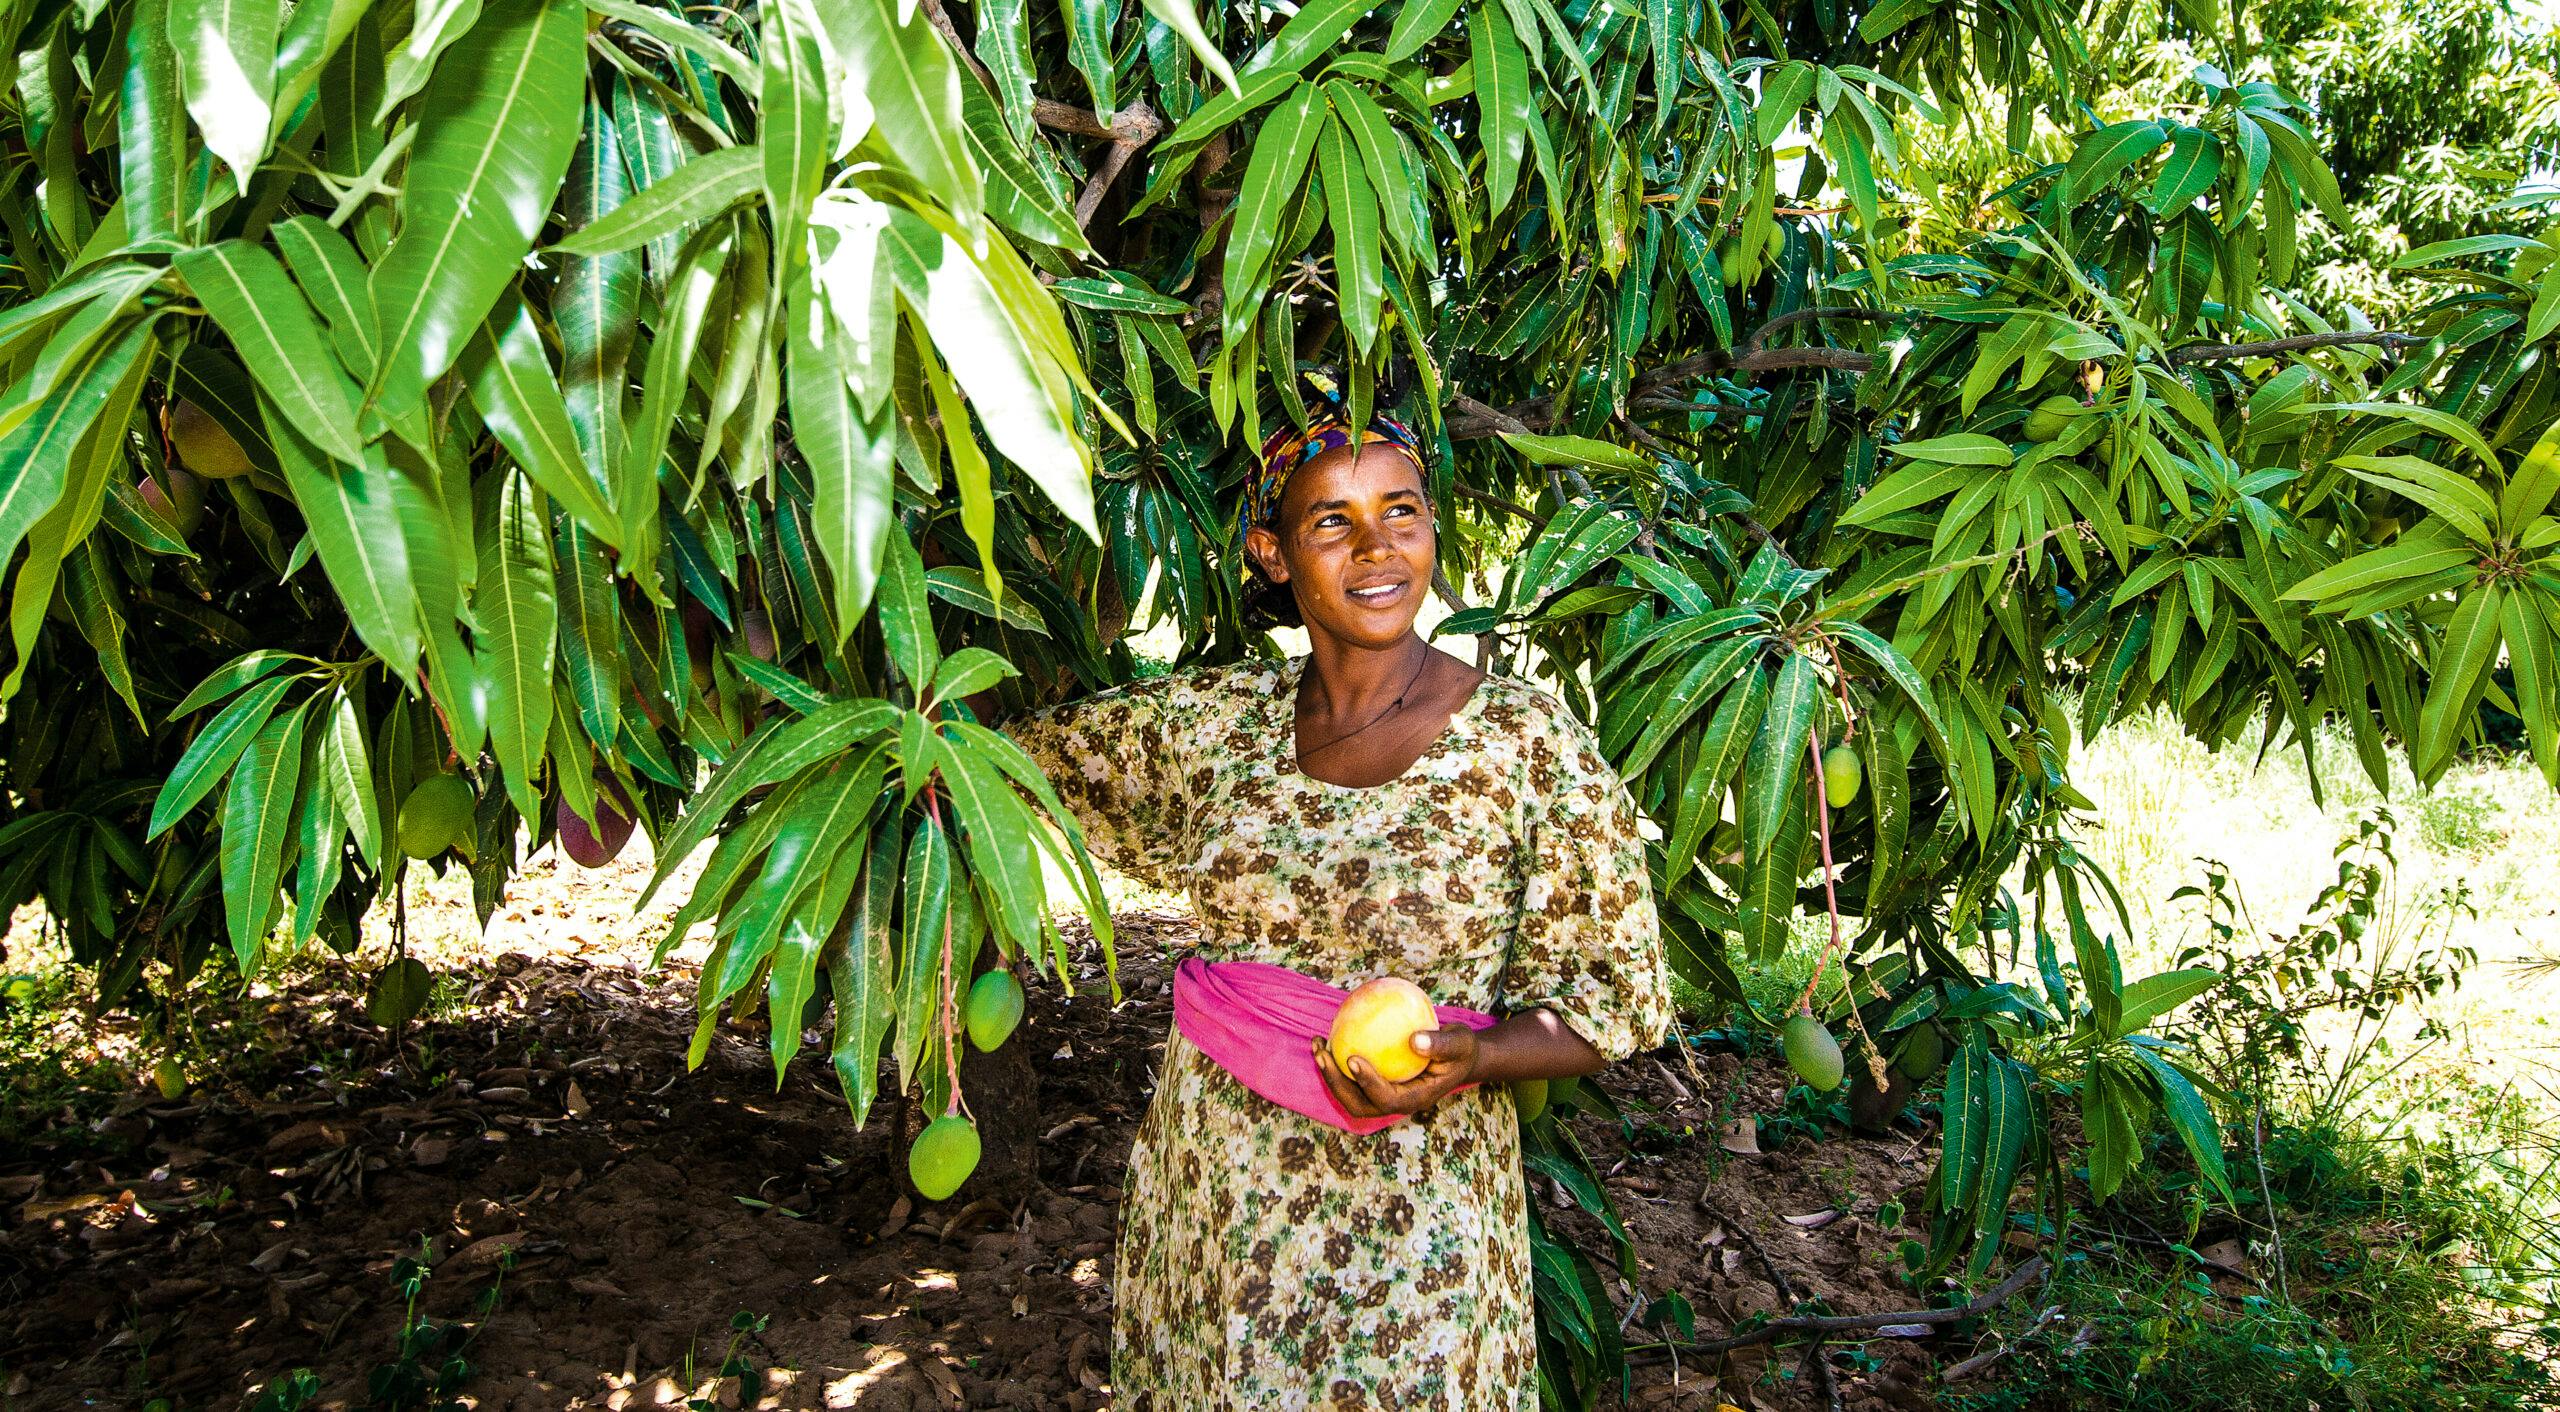 Odlaren Haregwa Gobegay har lyckats förvandla en stenig ravin i norra Etiopien till en ekologisk fruktträdgård med nära 7 000 mangoträd. Hon är en av de etiopiska småbrukare som tillsammans med vår samarbetsorganisation, Institute for Sustainable Development (ISD), lyckats vända utvecklingen i området. https://www.naturskyddsforeningen.se/nyheter/fran-stenig-ravin-till-ekologisk-frukttradgard